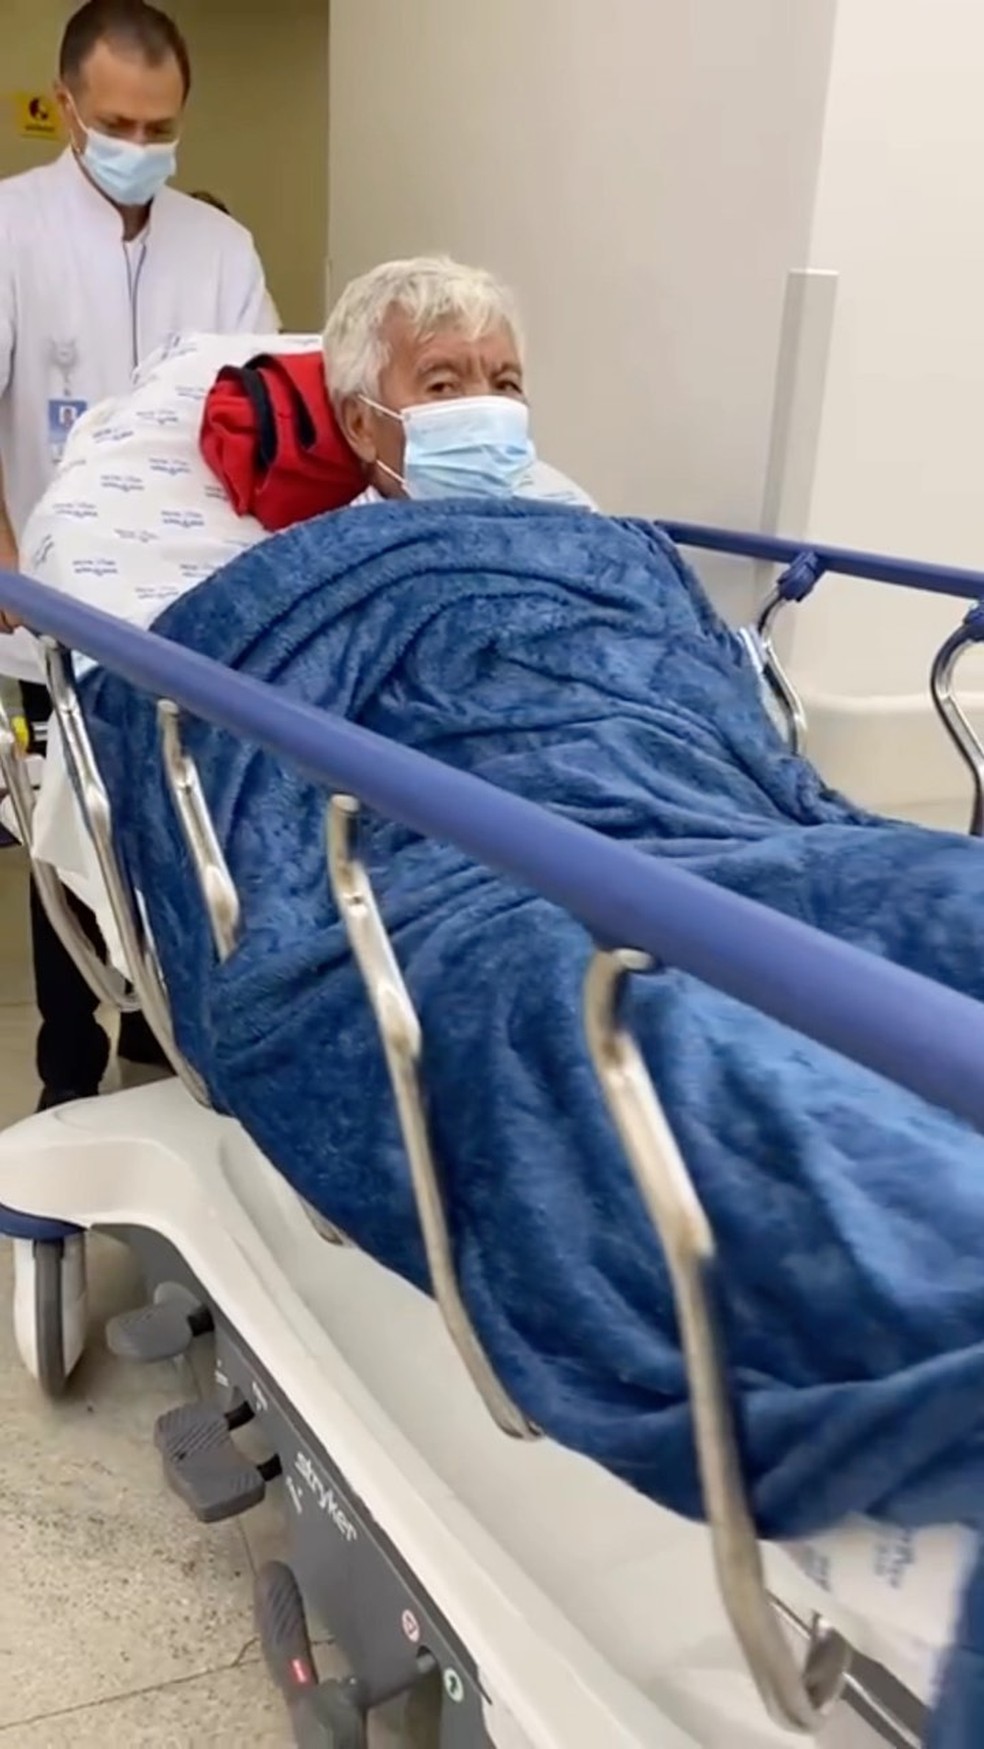 Roque, assistente de palco de Silvio Santos, é hospitalizado após queda em  condomínio em Jundiaí